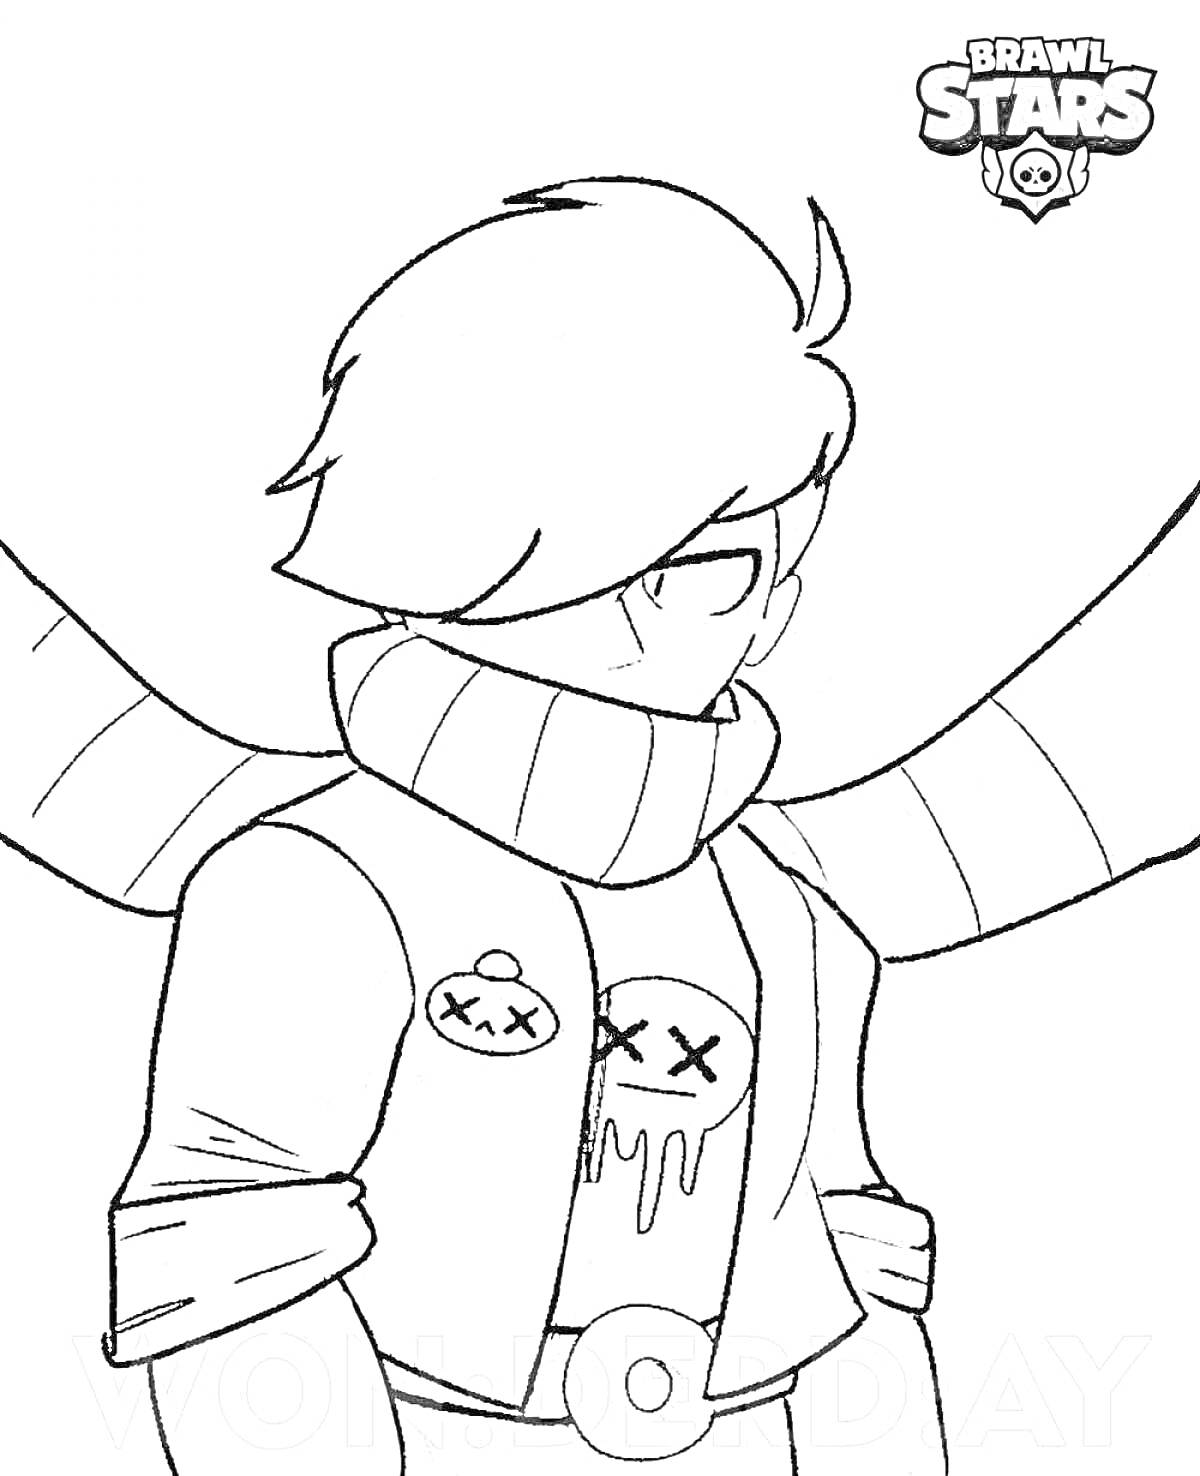 Раскраска Эдгар из игры Brawl Stars с шарфом и значком черепа, наброшенным на плечи